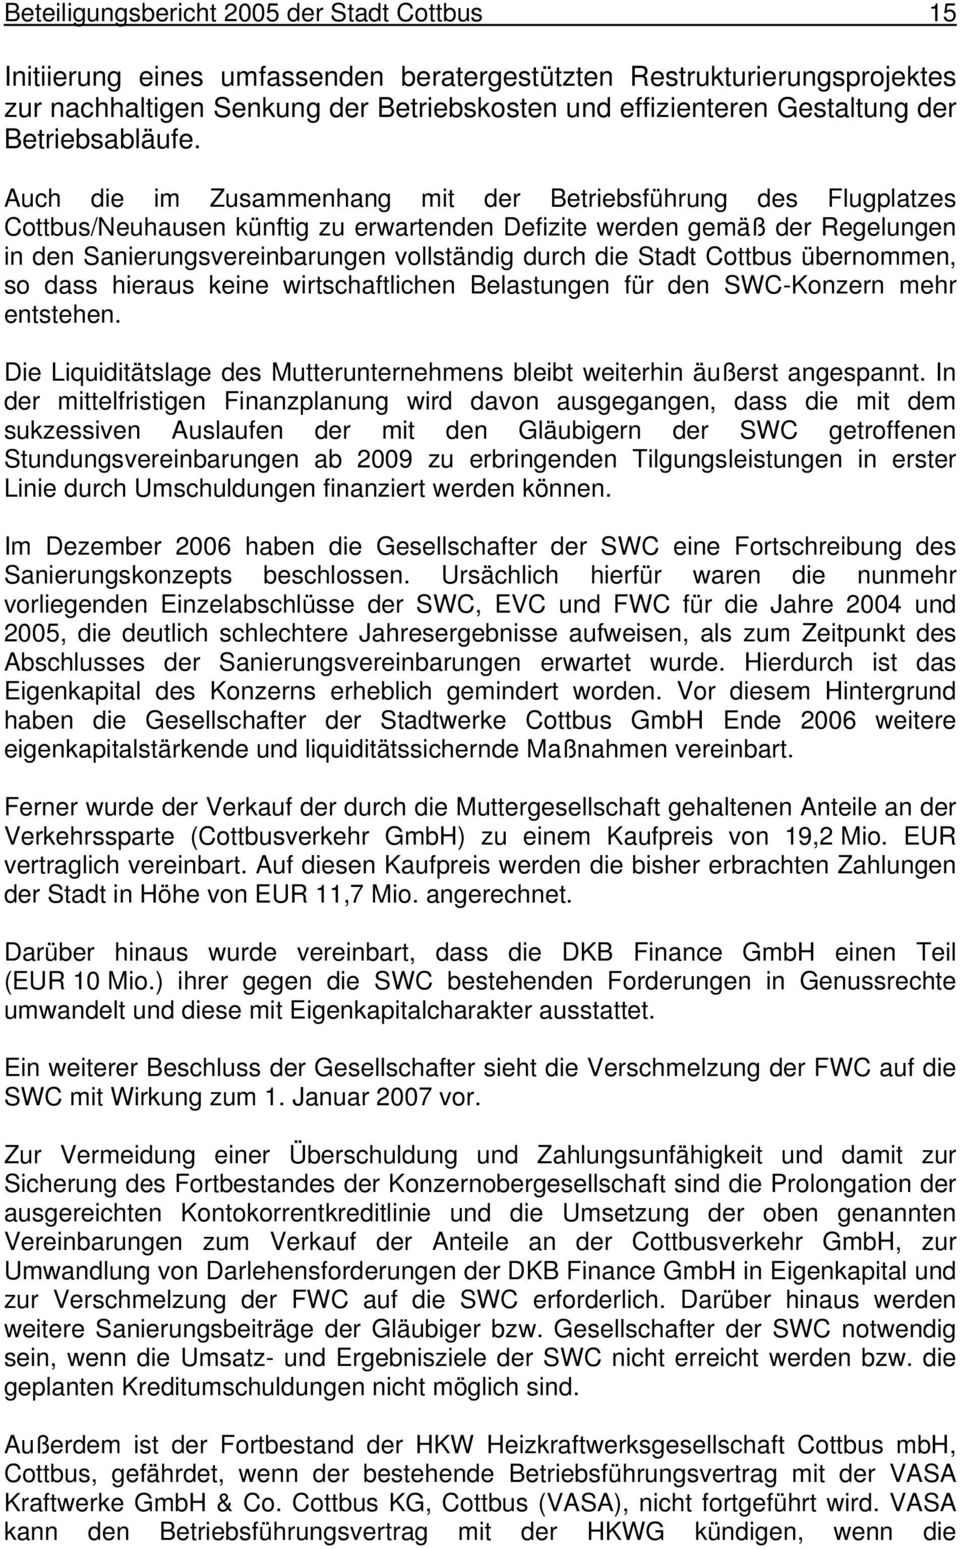 Auch die im Zusammenhang mit der Betriebsführung des Flugplatzes Cottbus/Neuhausen künftig zu erwartenden Defizite werden gemäß der Regelungen in den Sanierungsvereinbarungen vollständig durch die